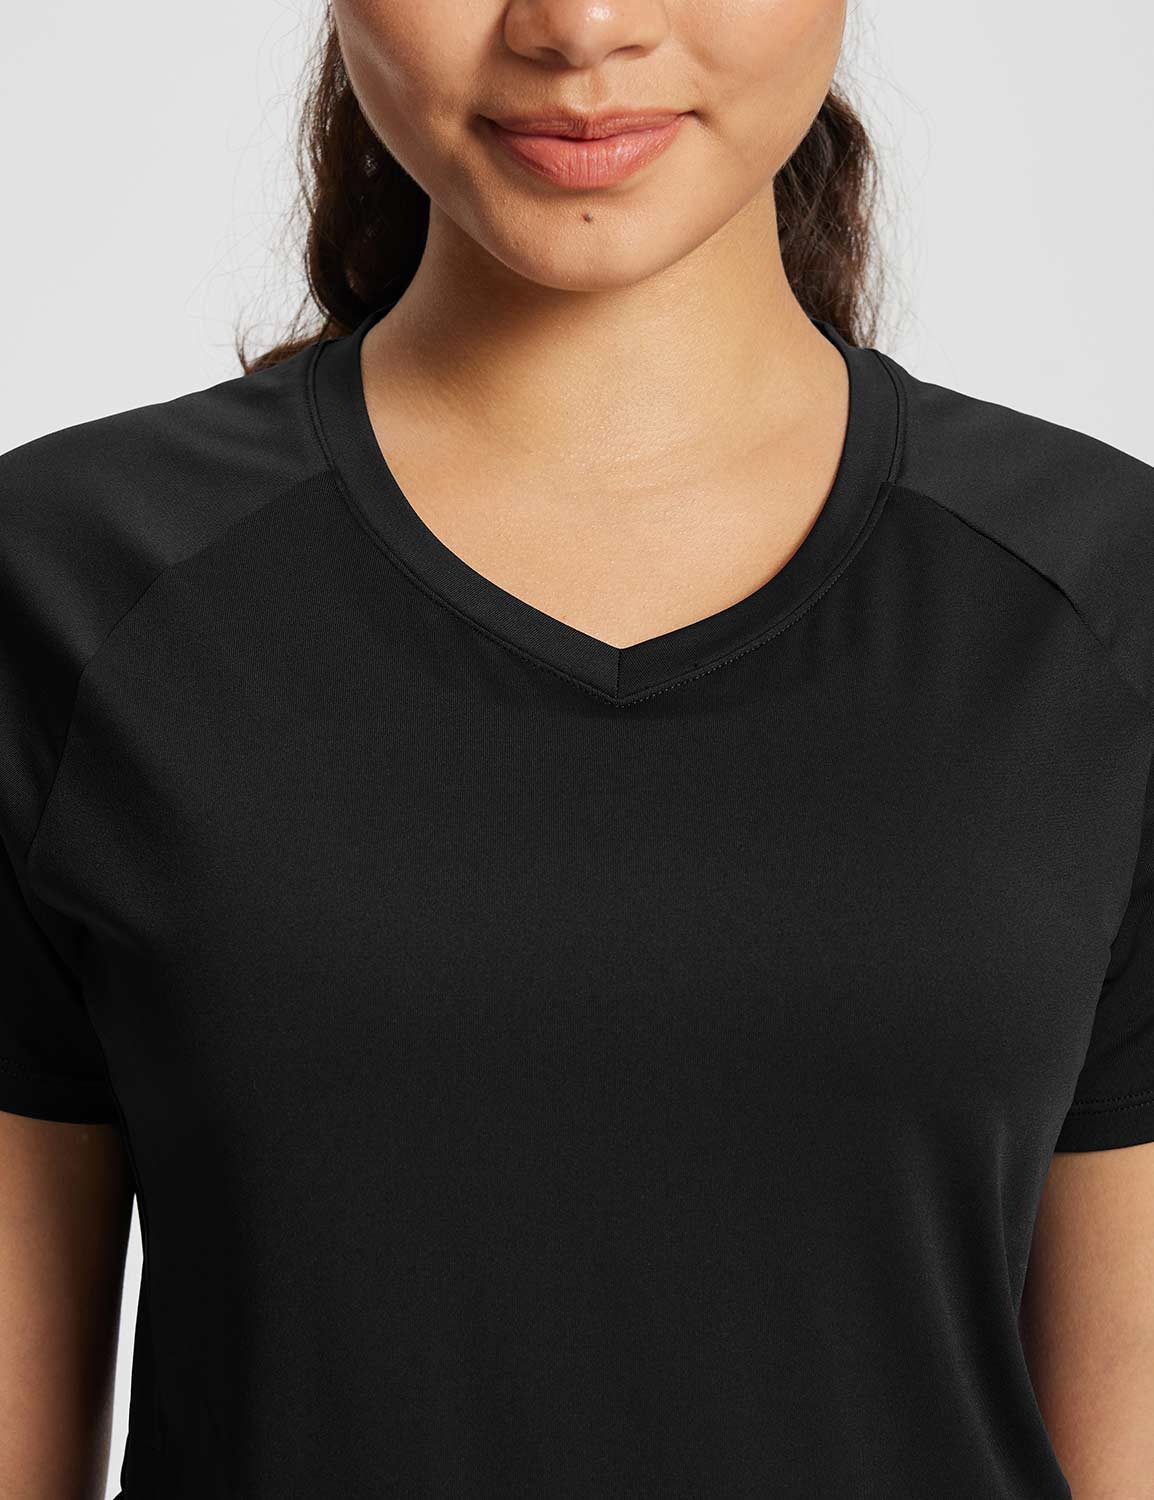 Baleaf Women's Summer Short Sleeve V Neck T-shirts Anthracite Details